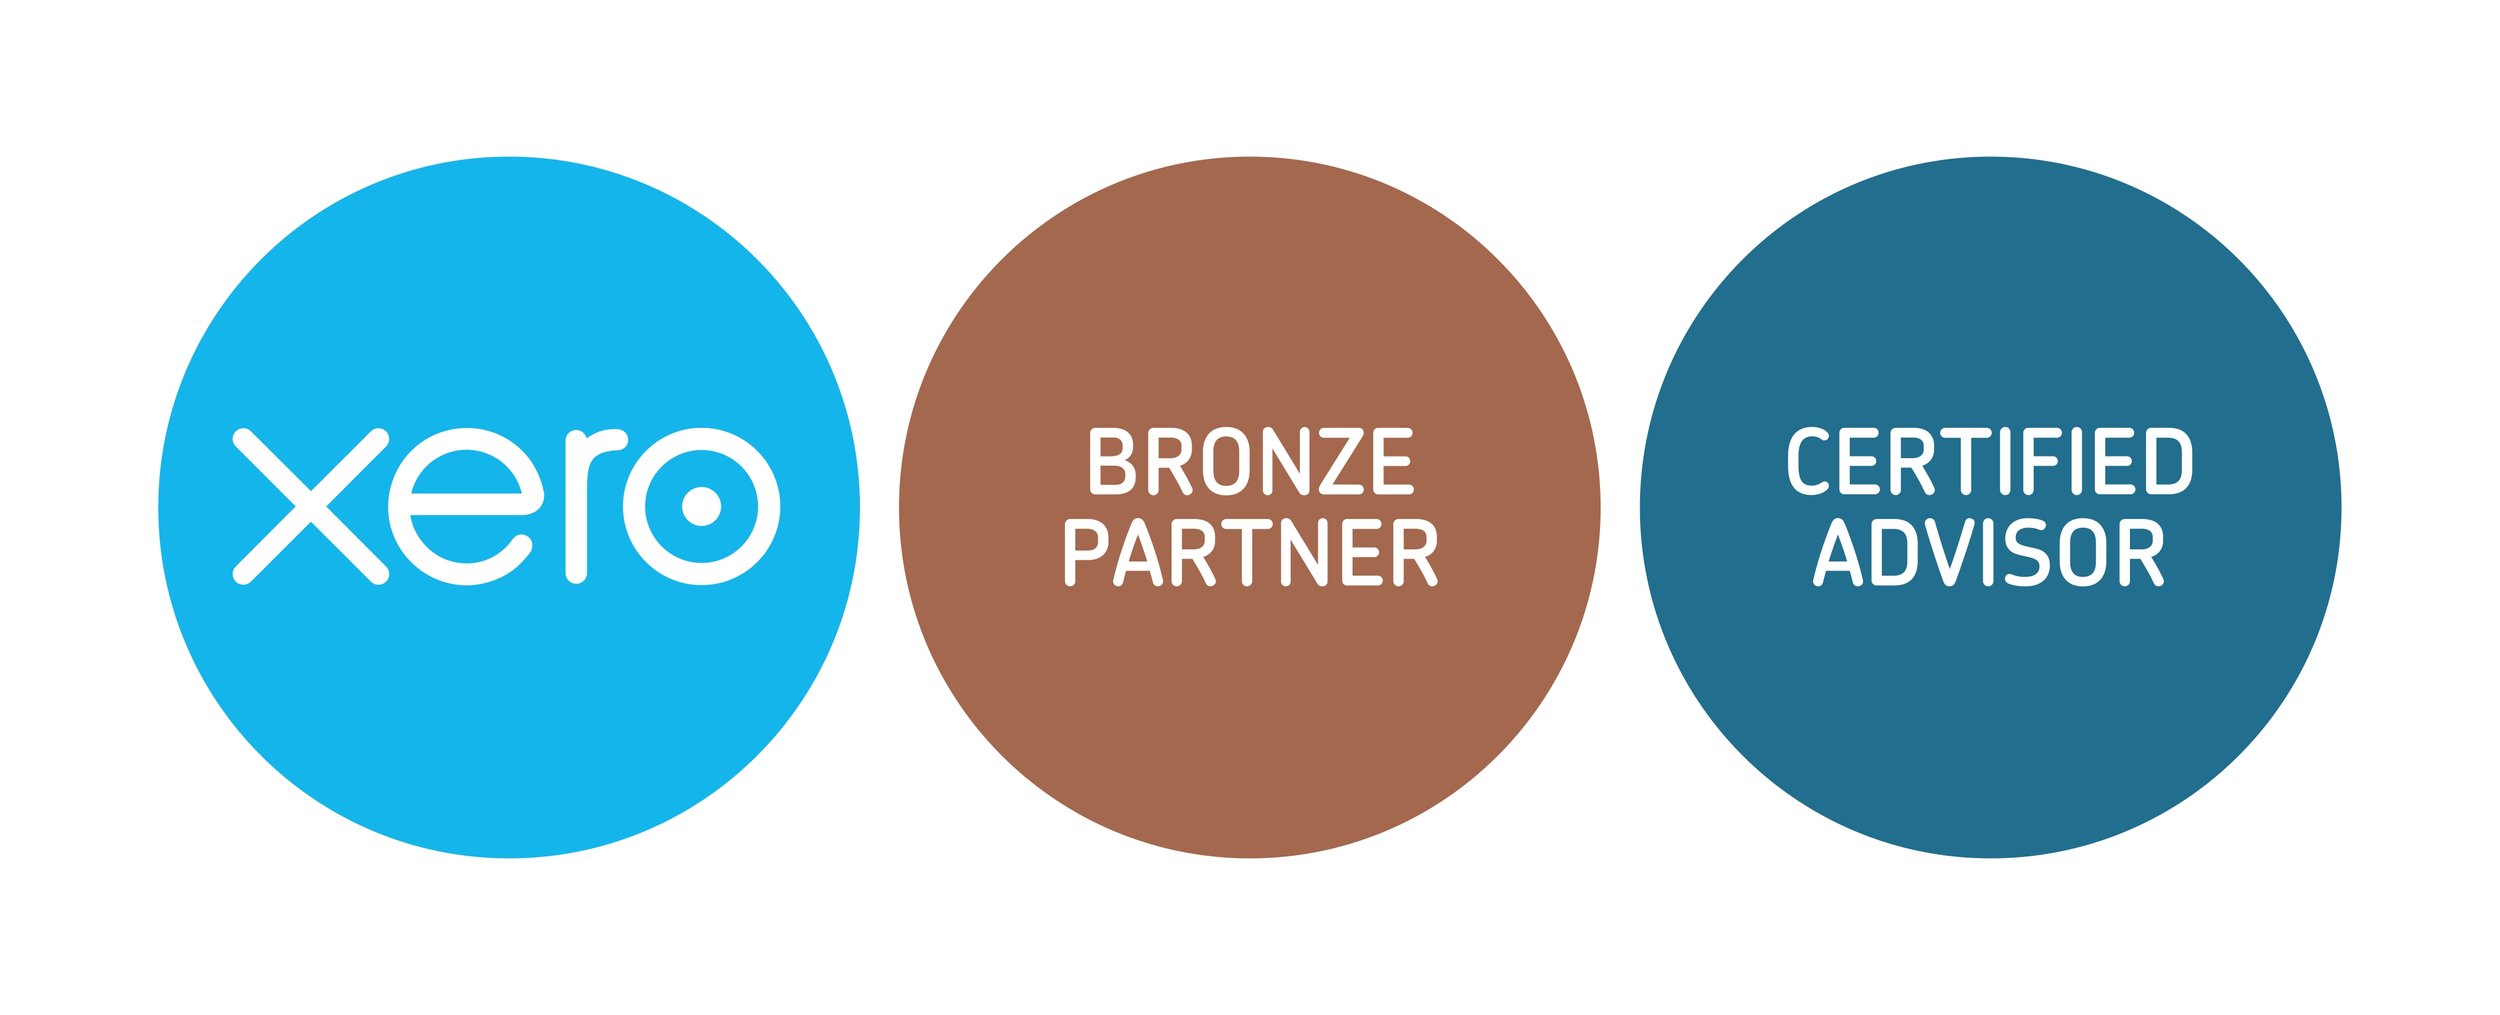 xero-bronze-partner + cert-advisor-badges-RGB (2)_page-0001.jpg